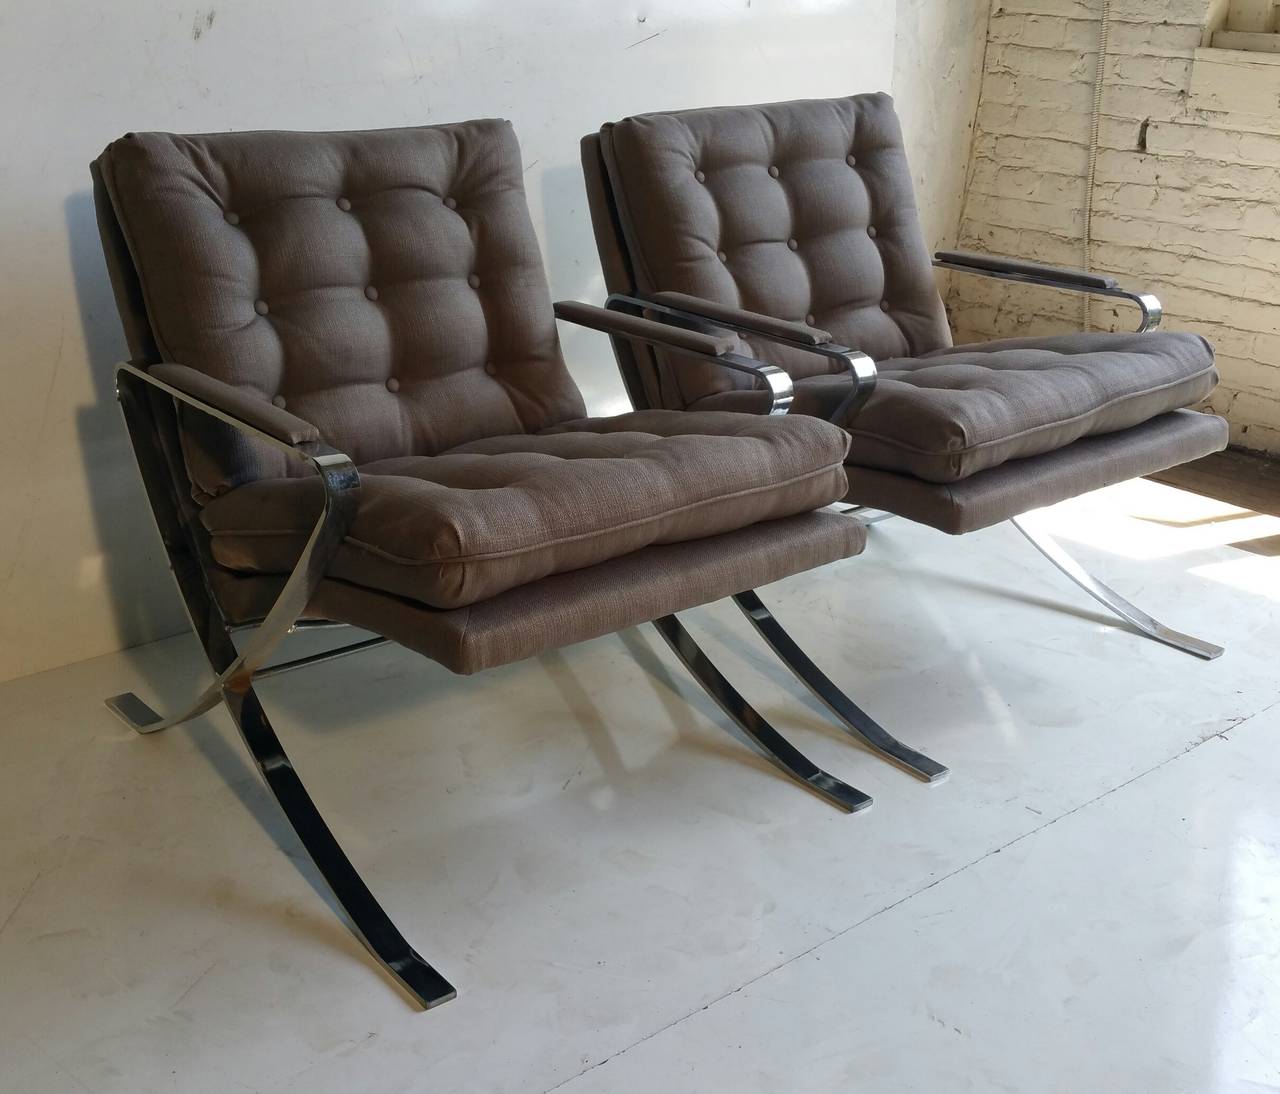 Eleganter verchromter Sessel von Bernhardt Inspiriert von den Stuhldesigns von Milo Baughman und Mies Van der Rohe (Barcelona Chair)  
Neu gepolstert,,
Der Chromrahmen ist in schönem Vintage-Zustand.

Die Stühle wurden von der Flair Division der